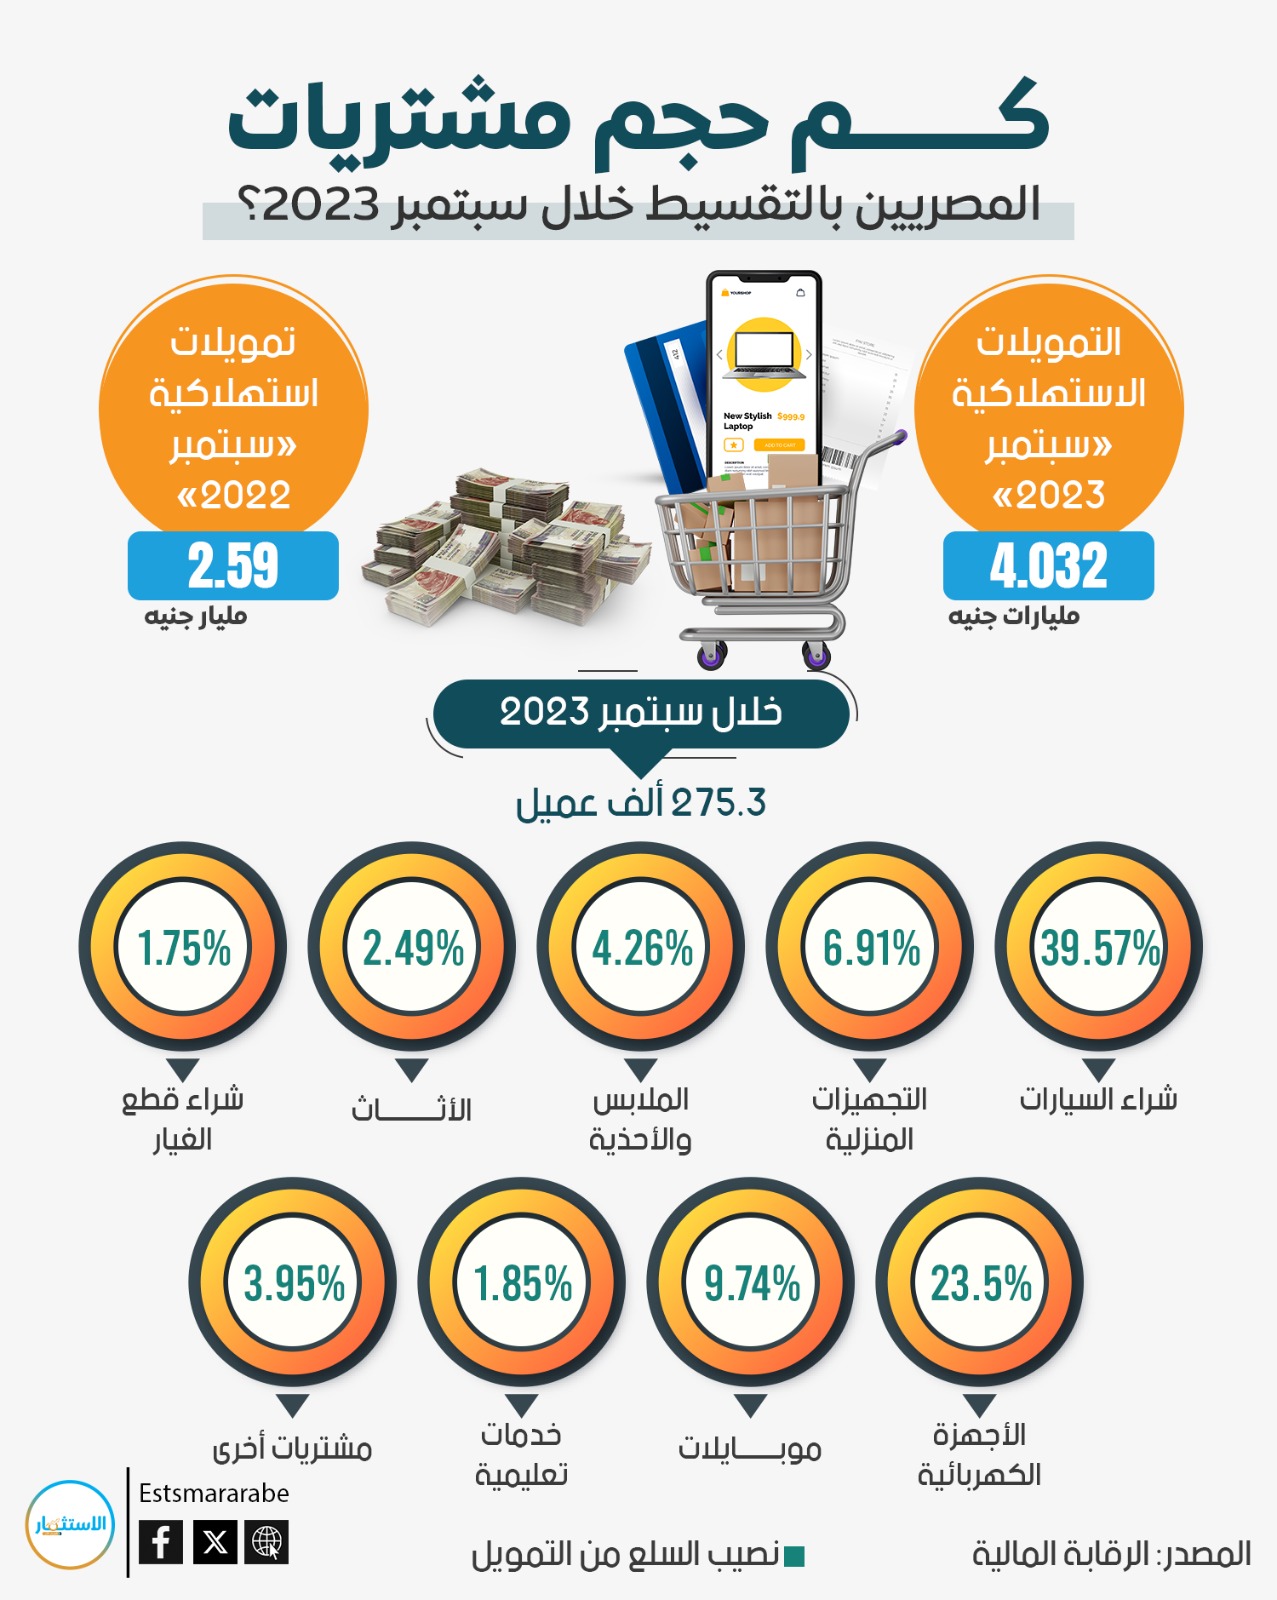 كم حجم مشتريات المصريين بالتقسيط خلال سبتمبر 2023؟